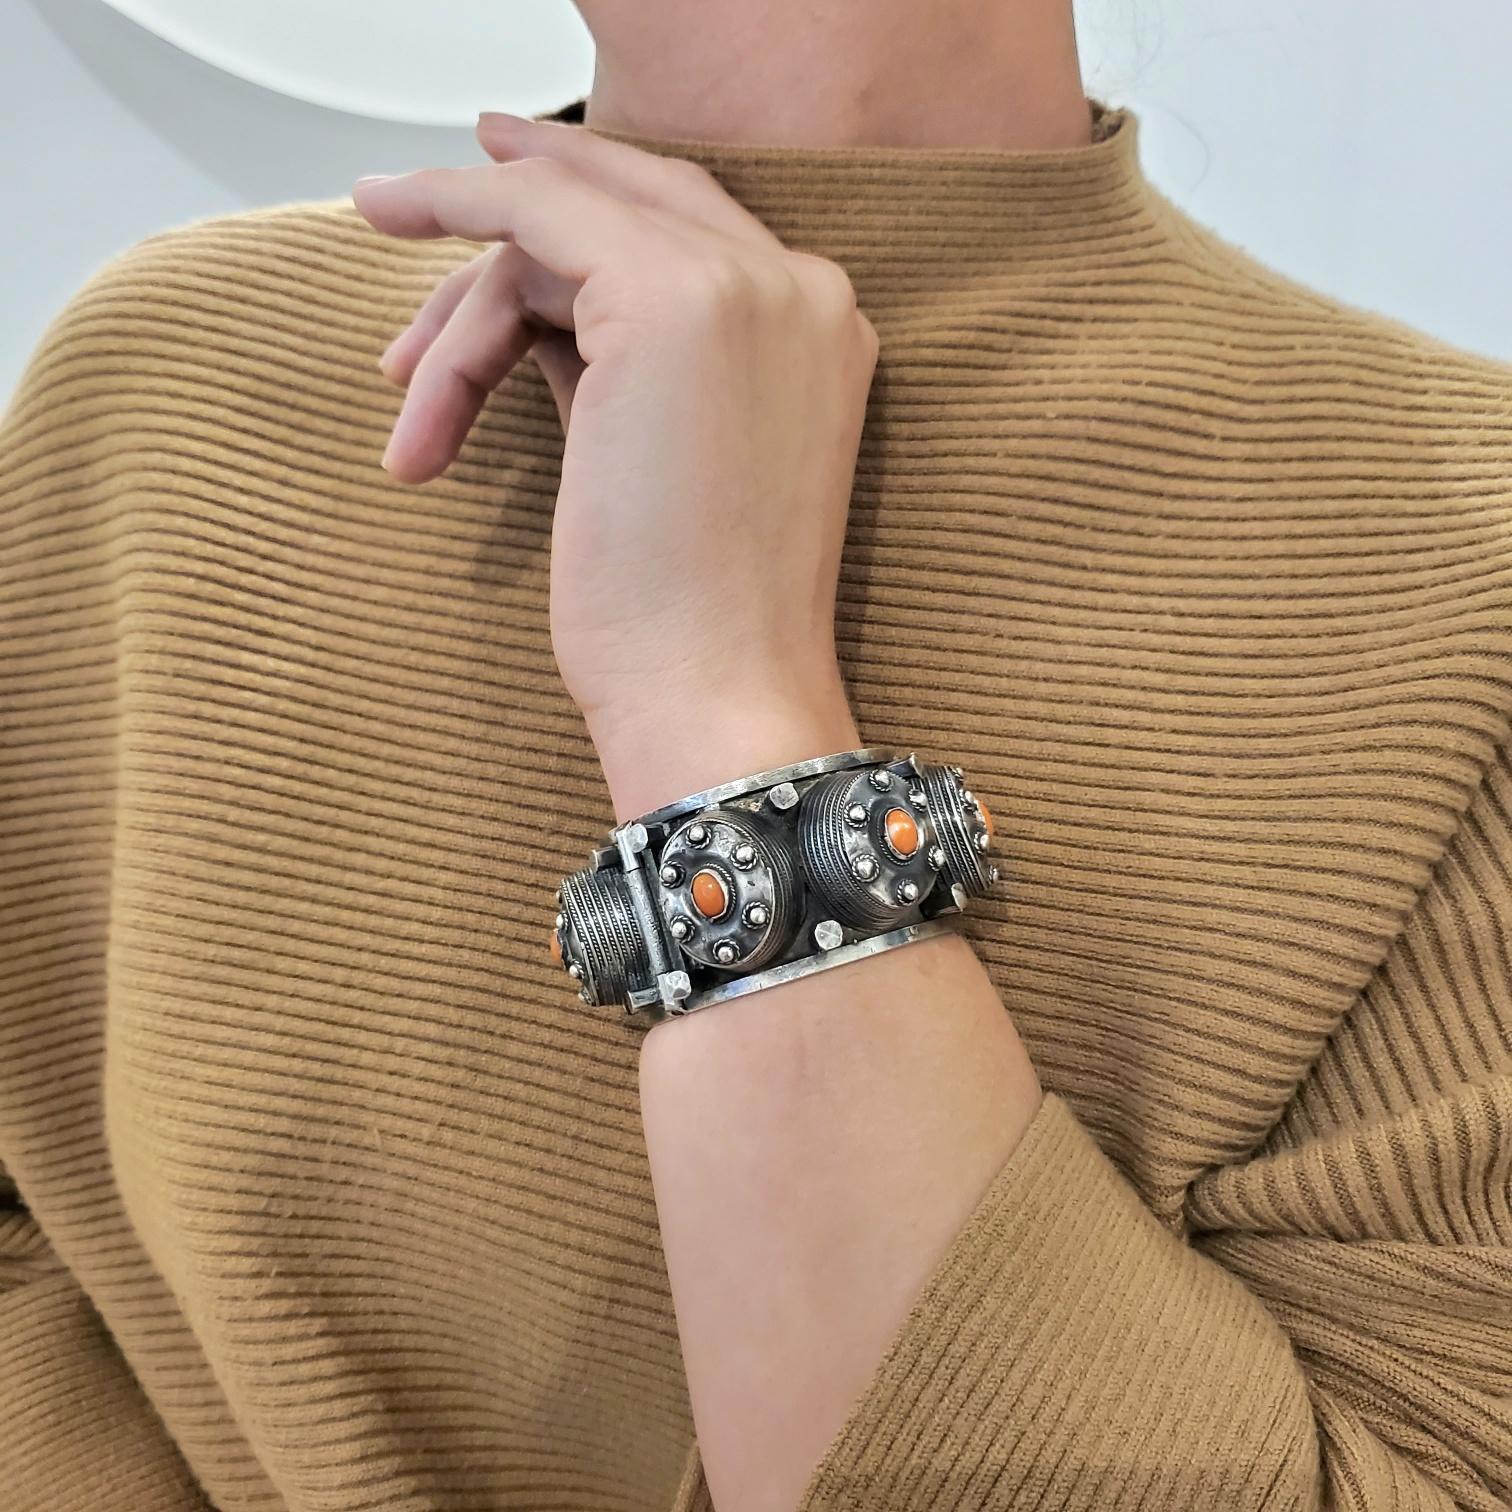 Französisch-algerisches geometrisches Art-déco-Armband.

Wunderschönes geometrisches Armband, das in den 1930er Jahren im französischen Algerien während der Art-déco-Zeit entstand. Dieser ungewöhnliche Armreif wurde mit naiven geometrischen Mustern